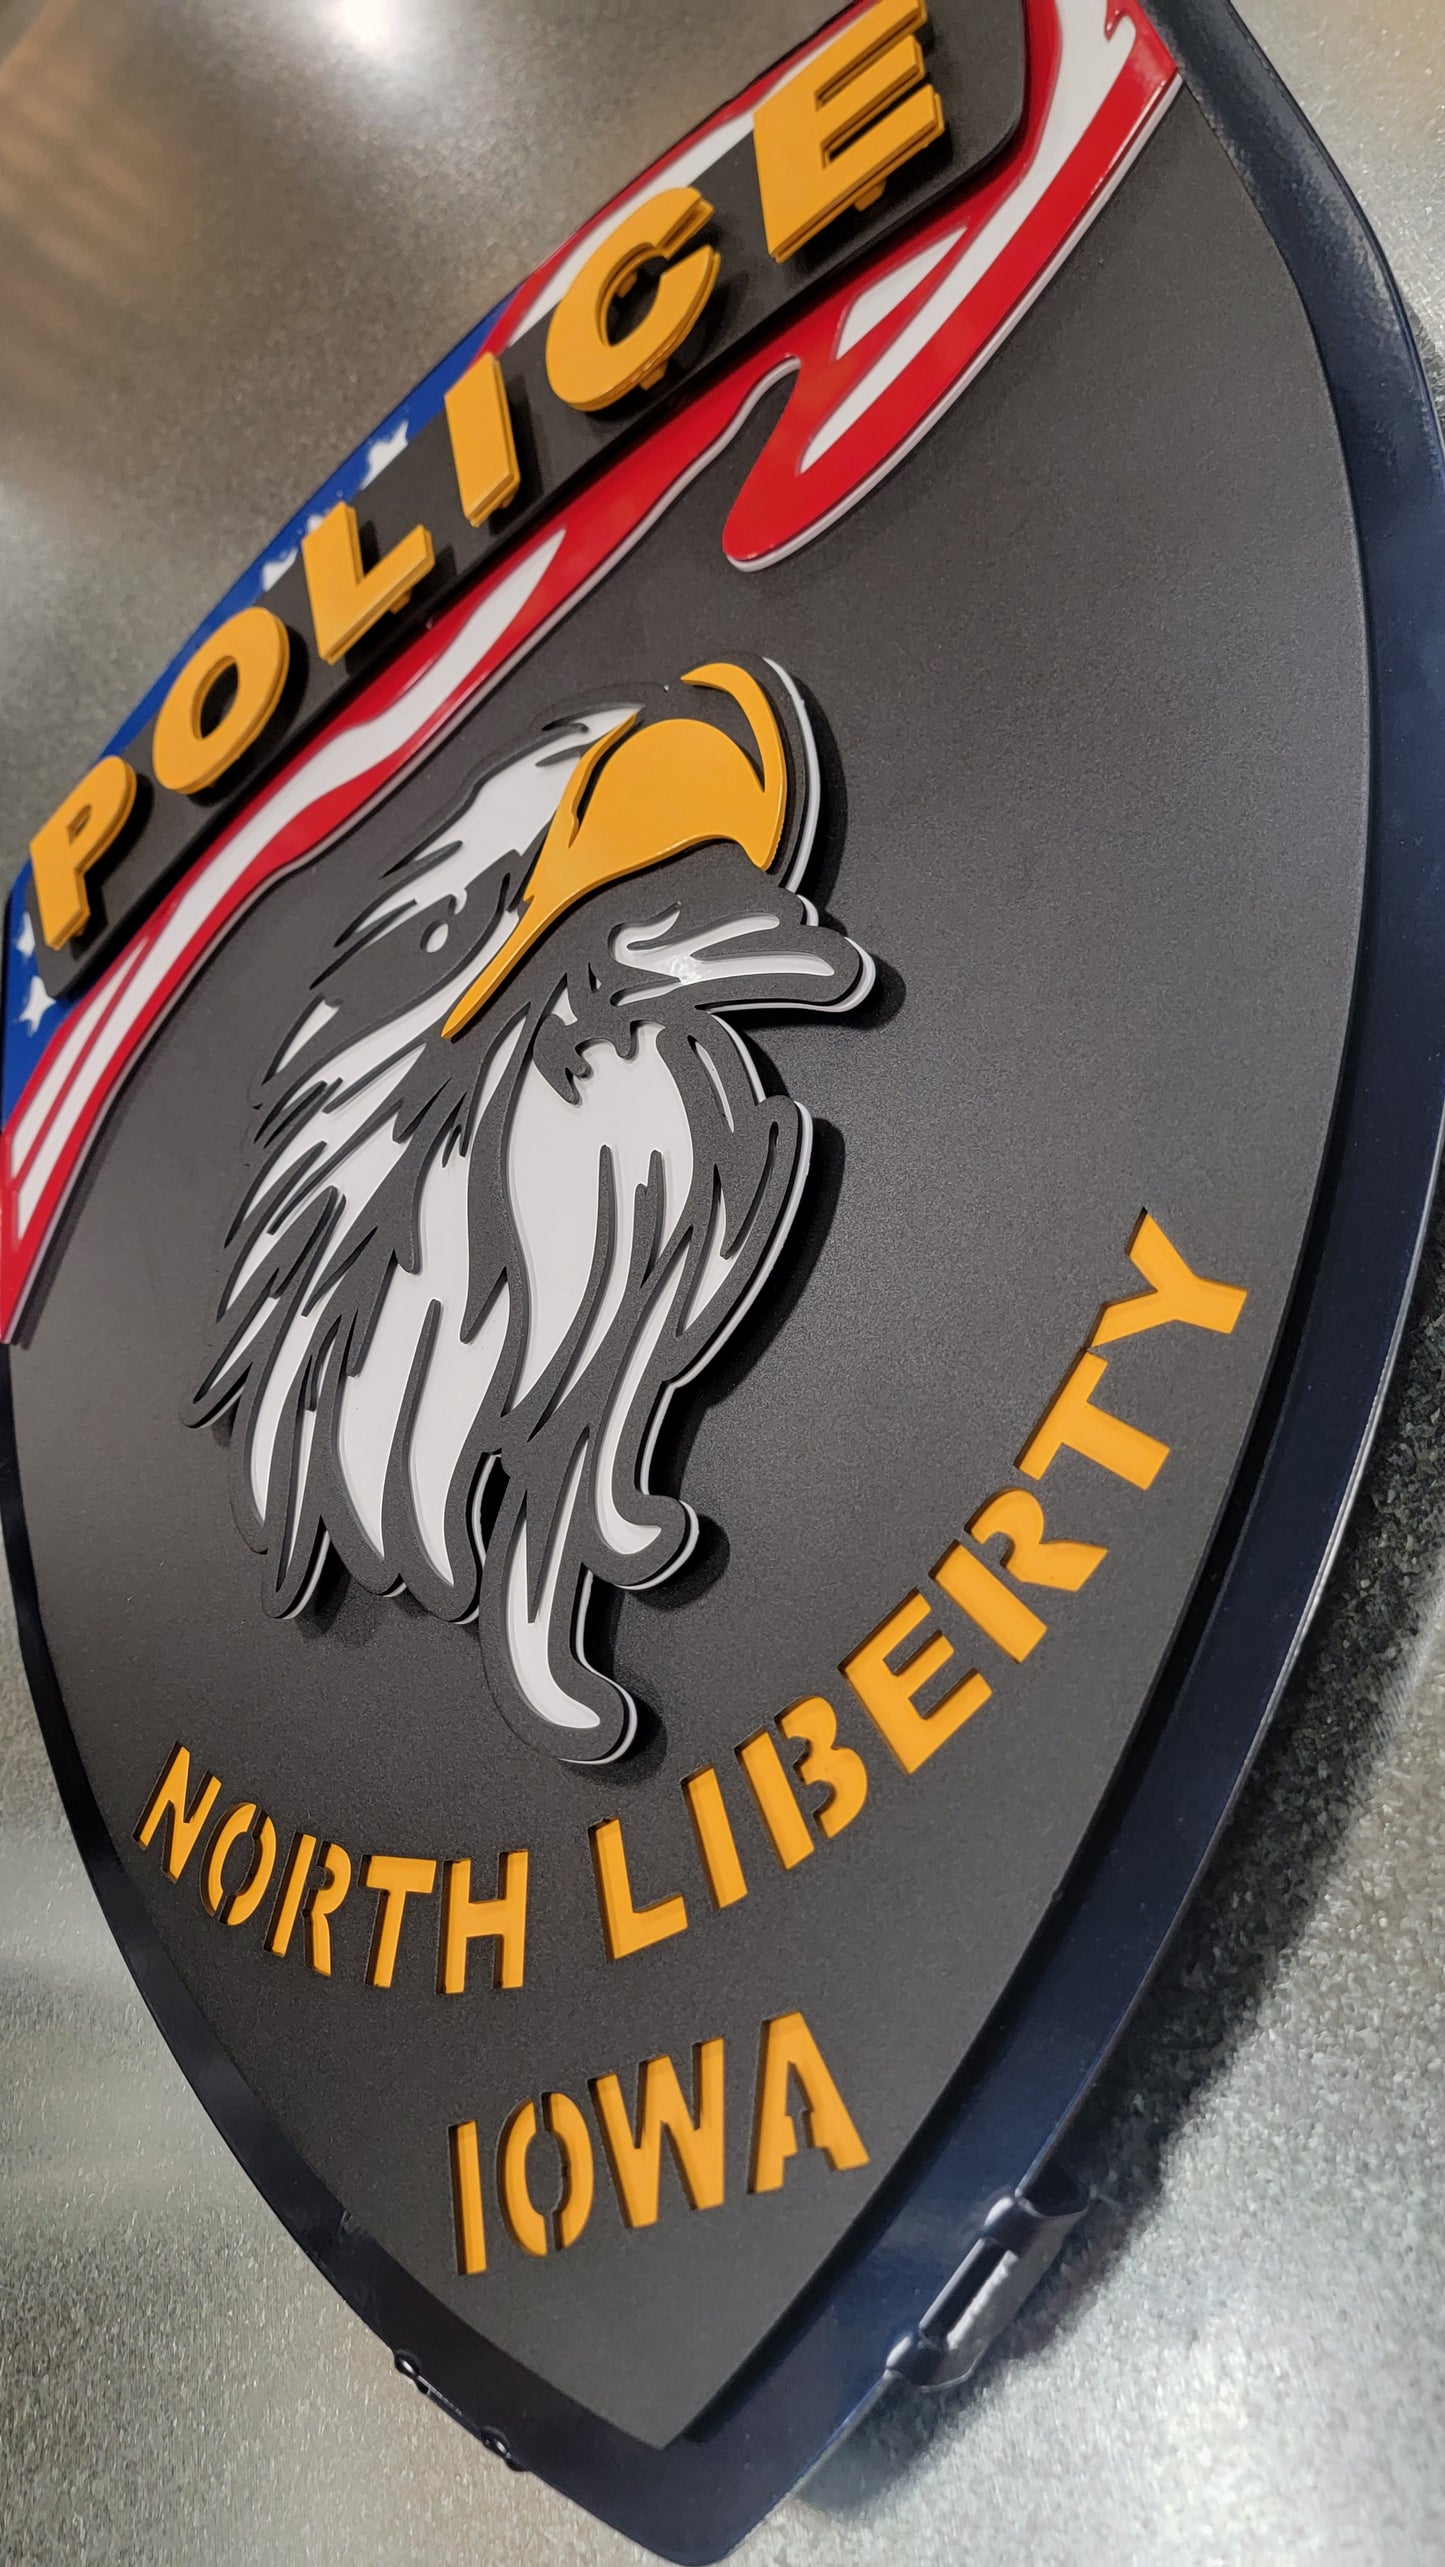 North Liberty Iowa Badge